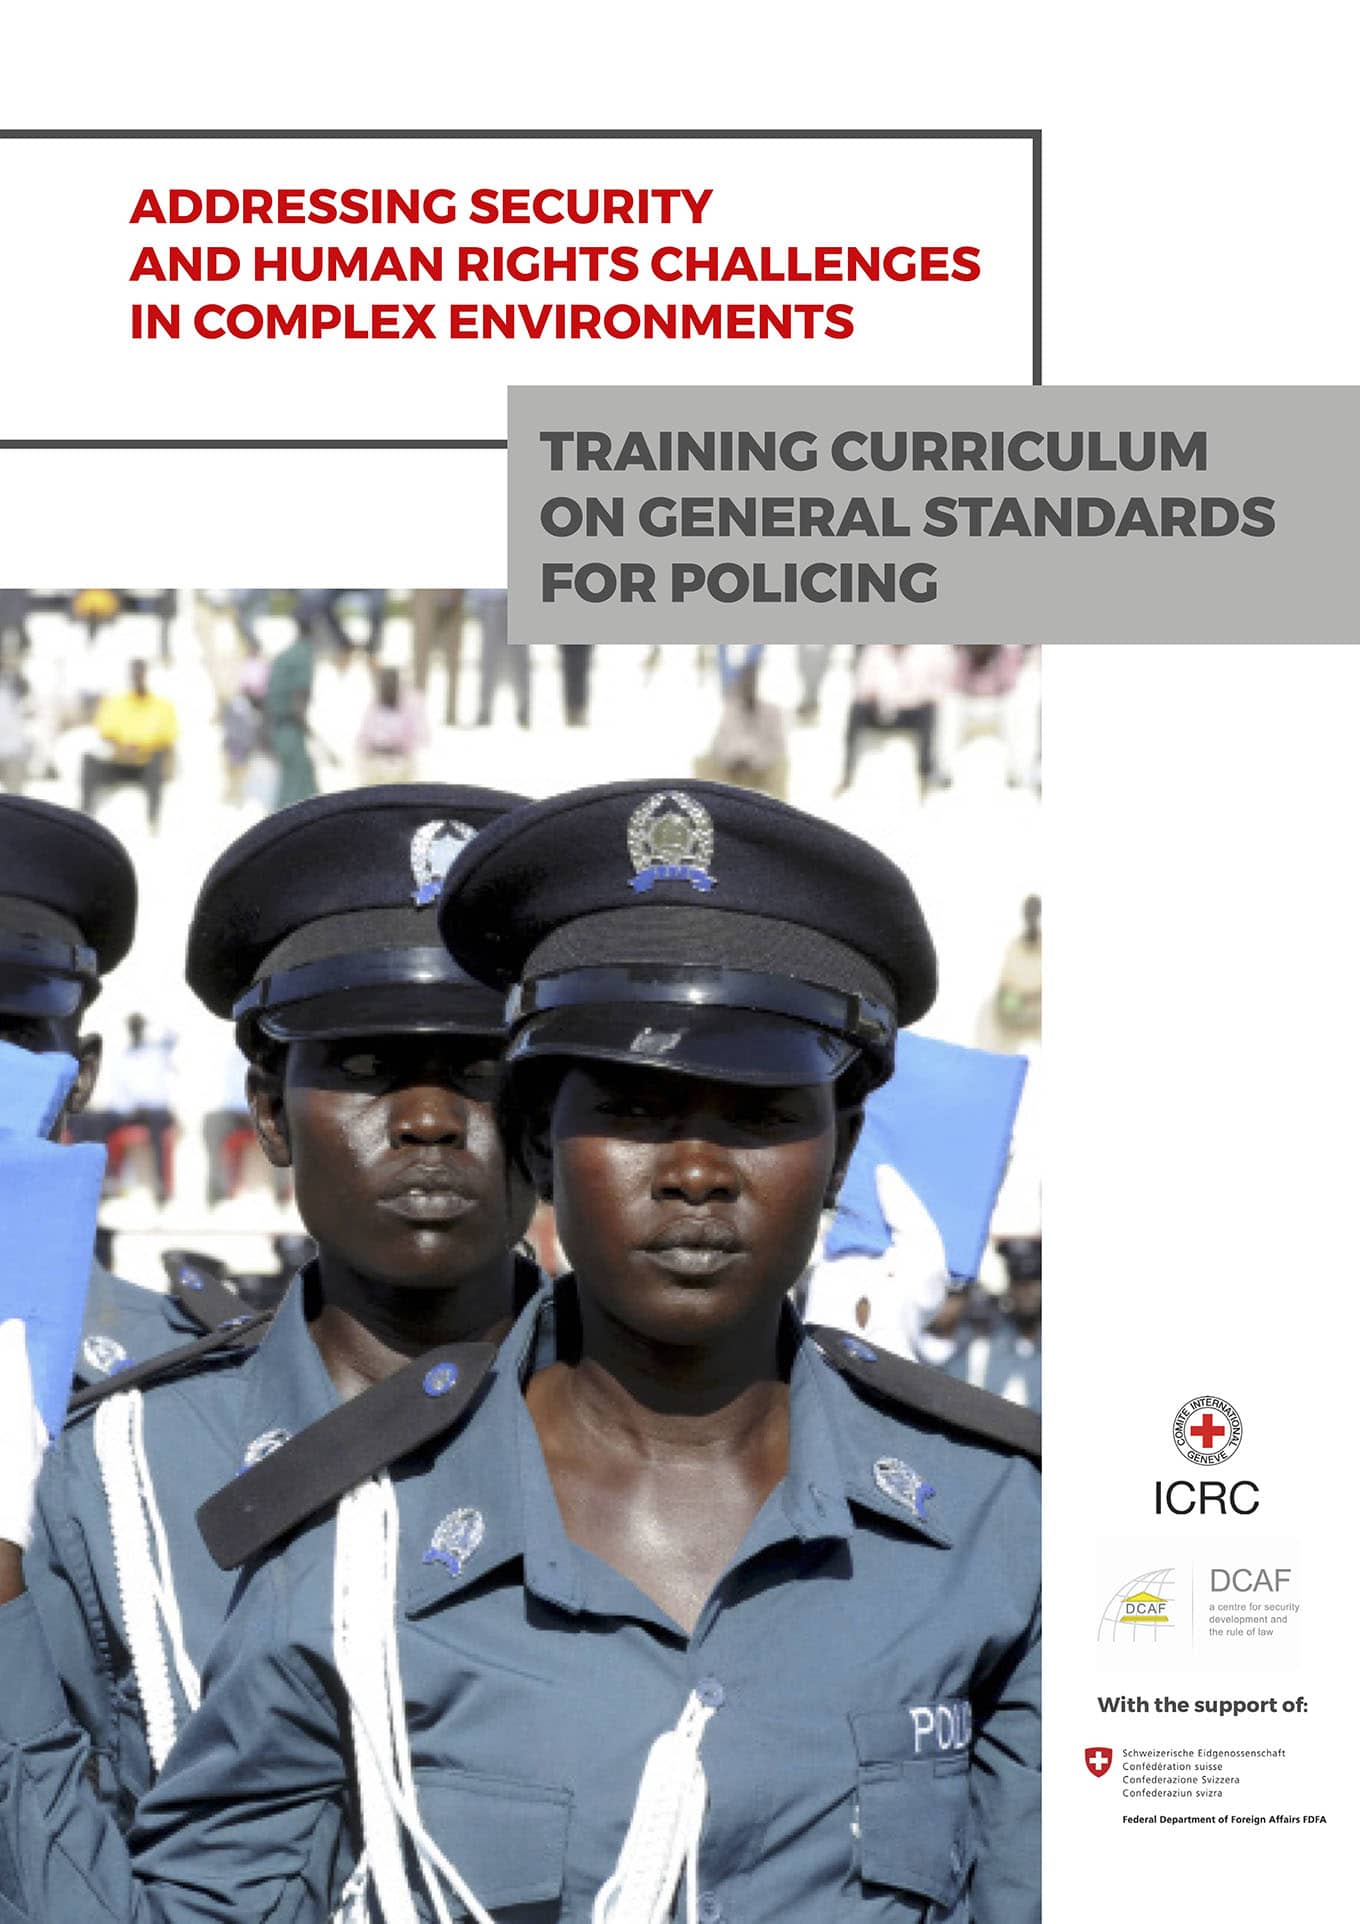 Programme de formation sur les normes générales relatives au maintien de l’ordre (DCAF et CICR, Septembre 2018)